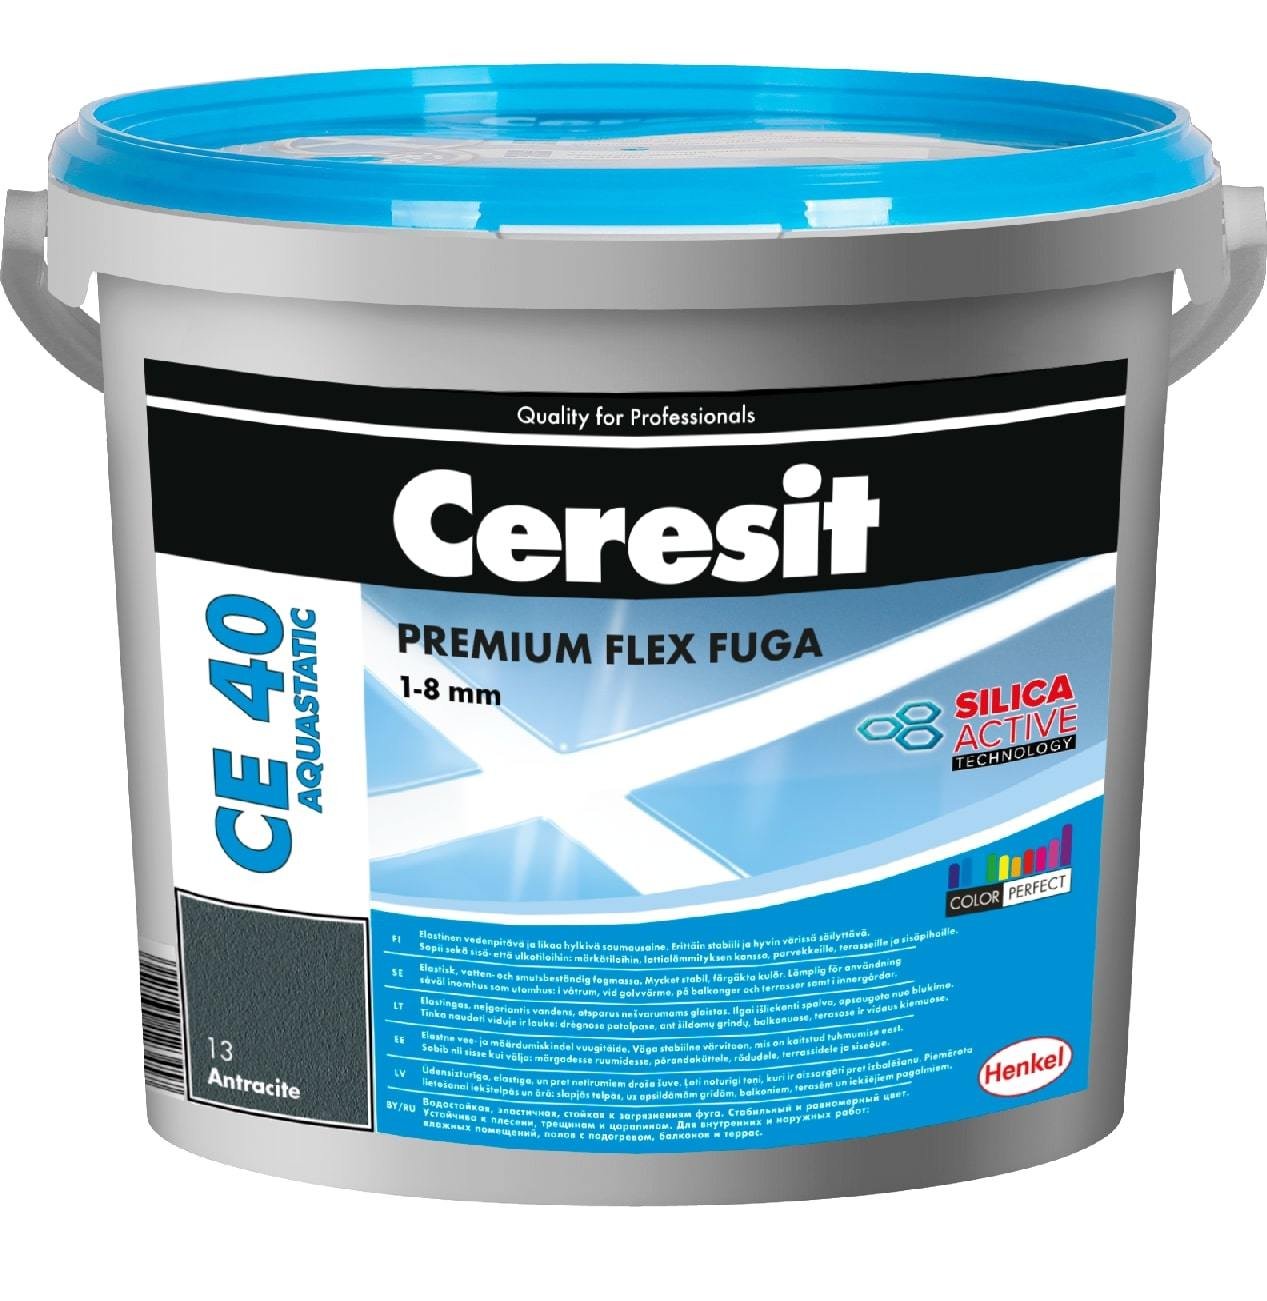 Elastingas plytelių siūlių glaistas CERESIT CE40 AQUASTATIC 12, cemento pilkumo sp., 5 kg - 1